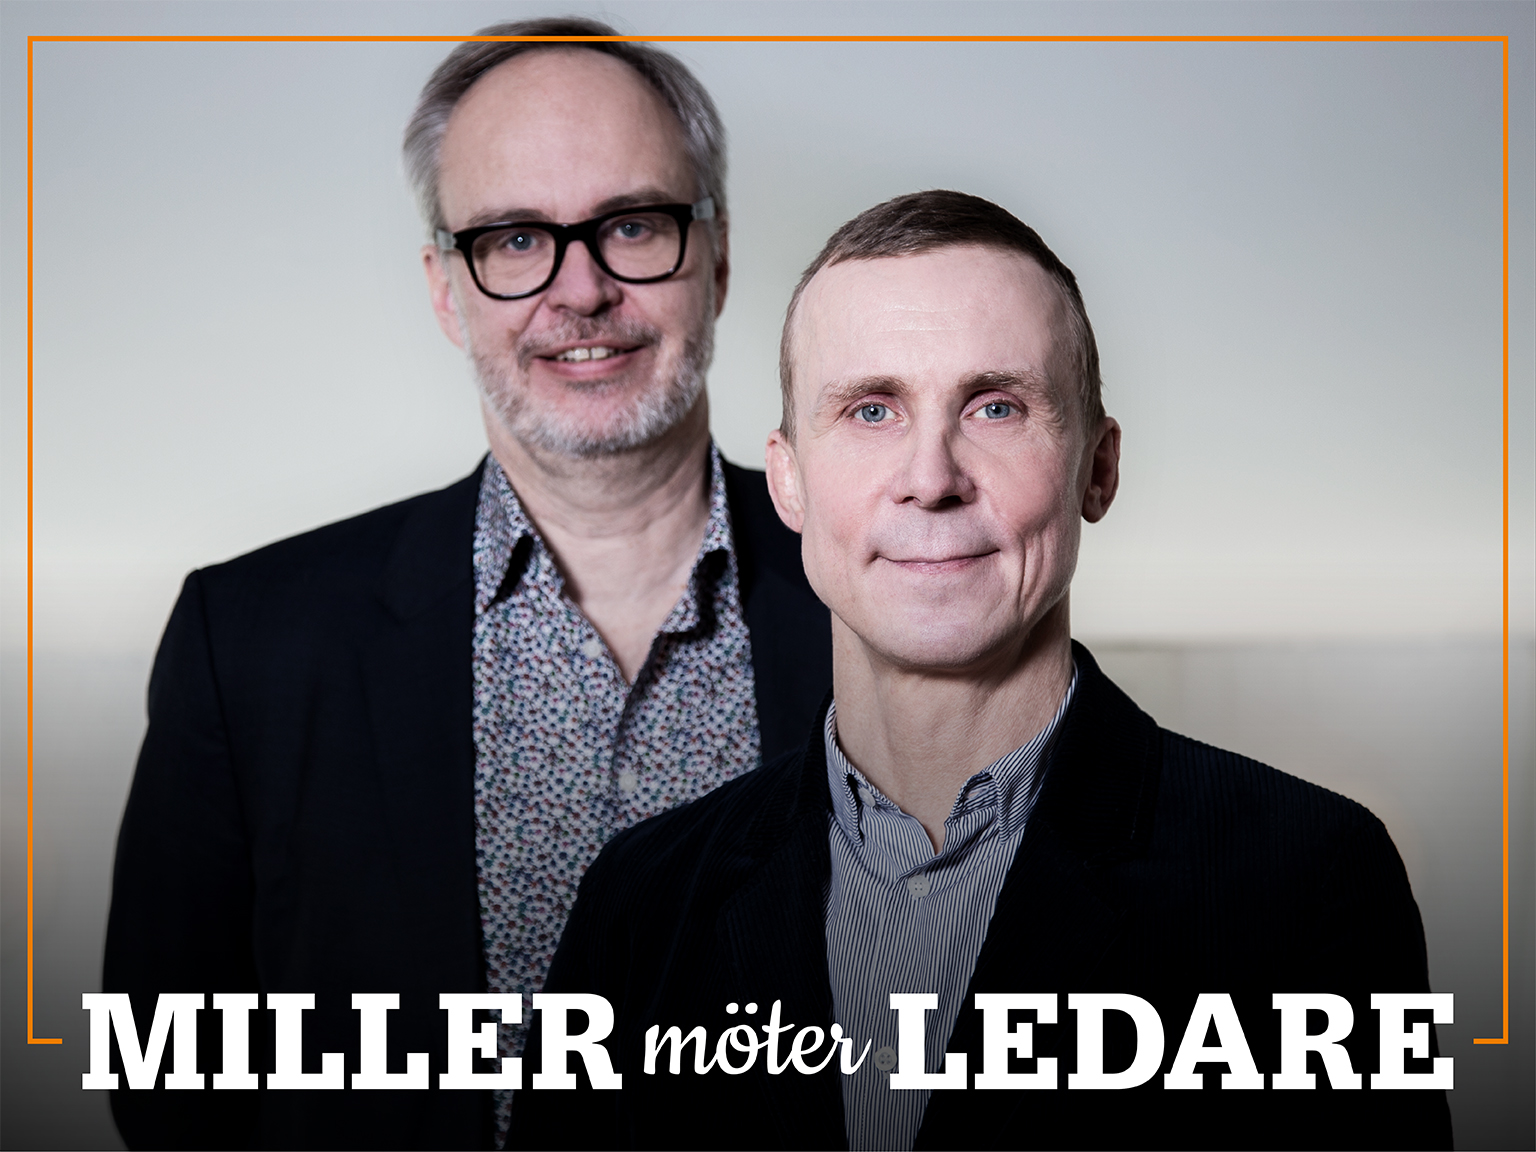 Omslag för podden Miller möter ledare – bild på Andreas Miller och Simon Norrthon.